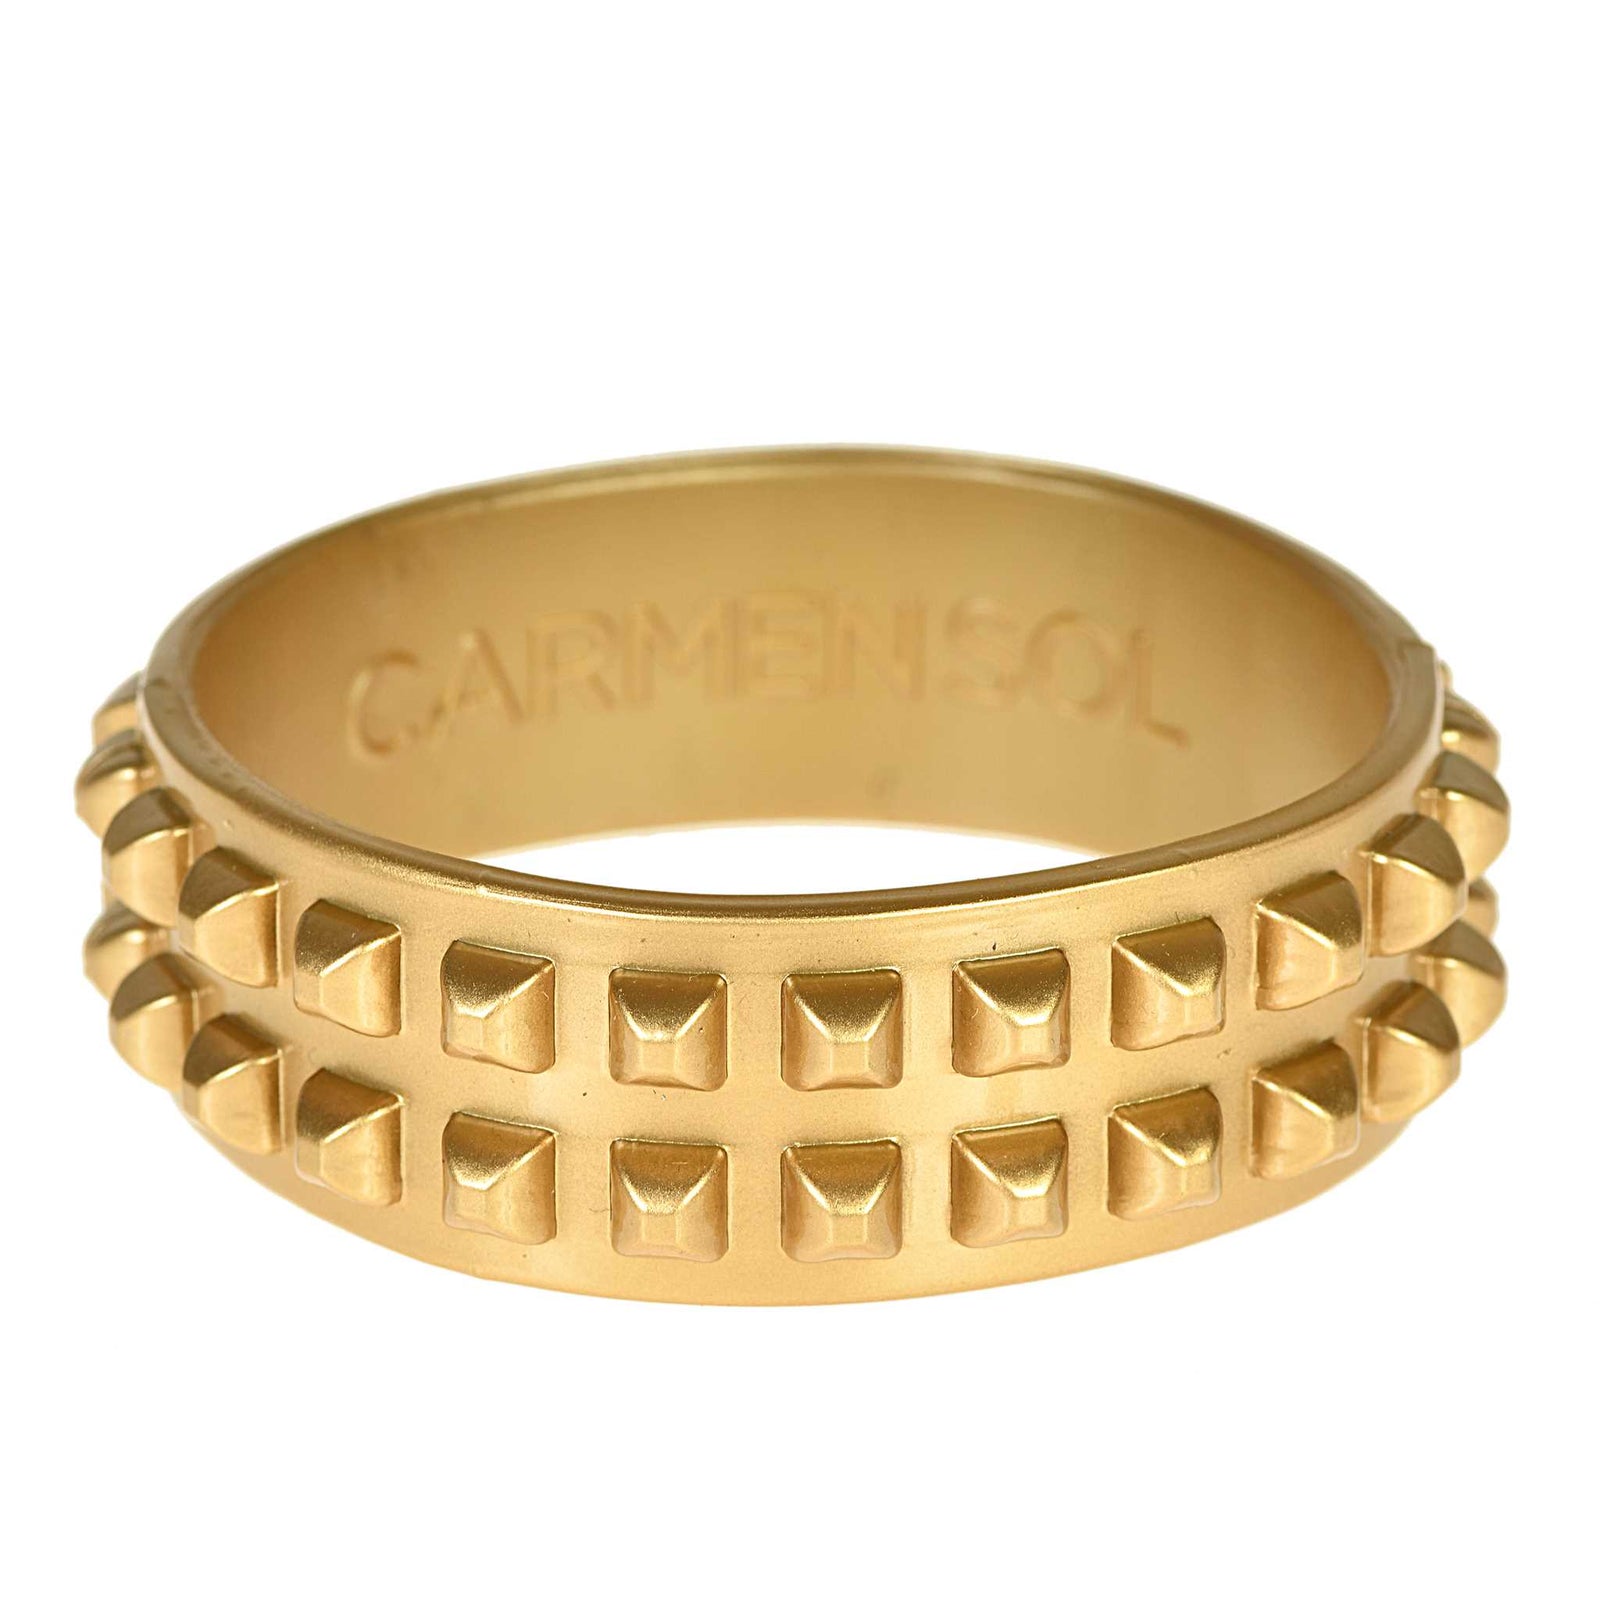 Womens gold bracelets in jelly